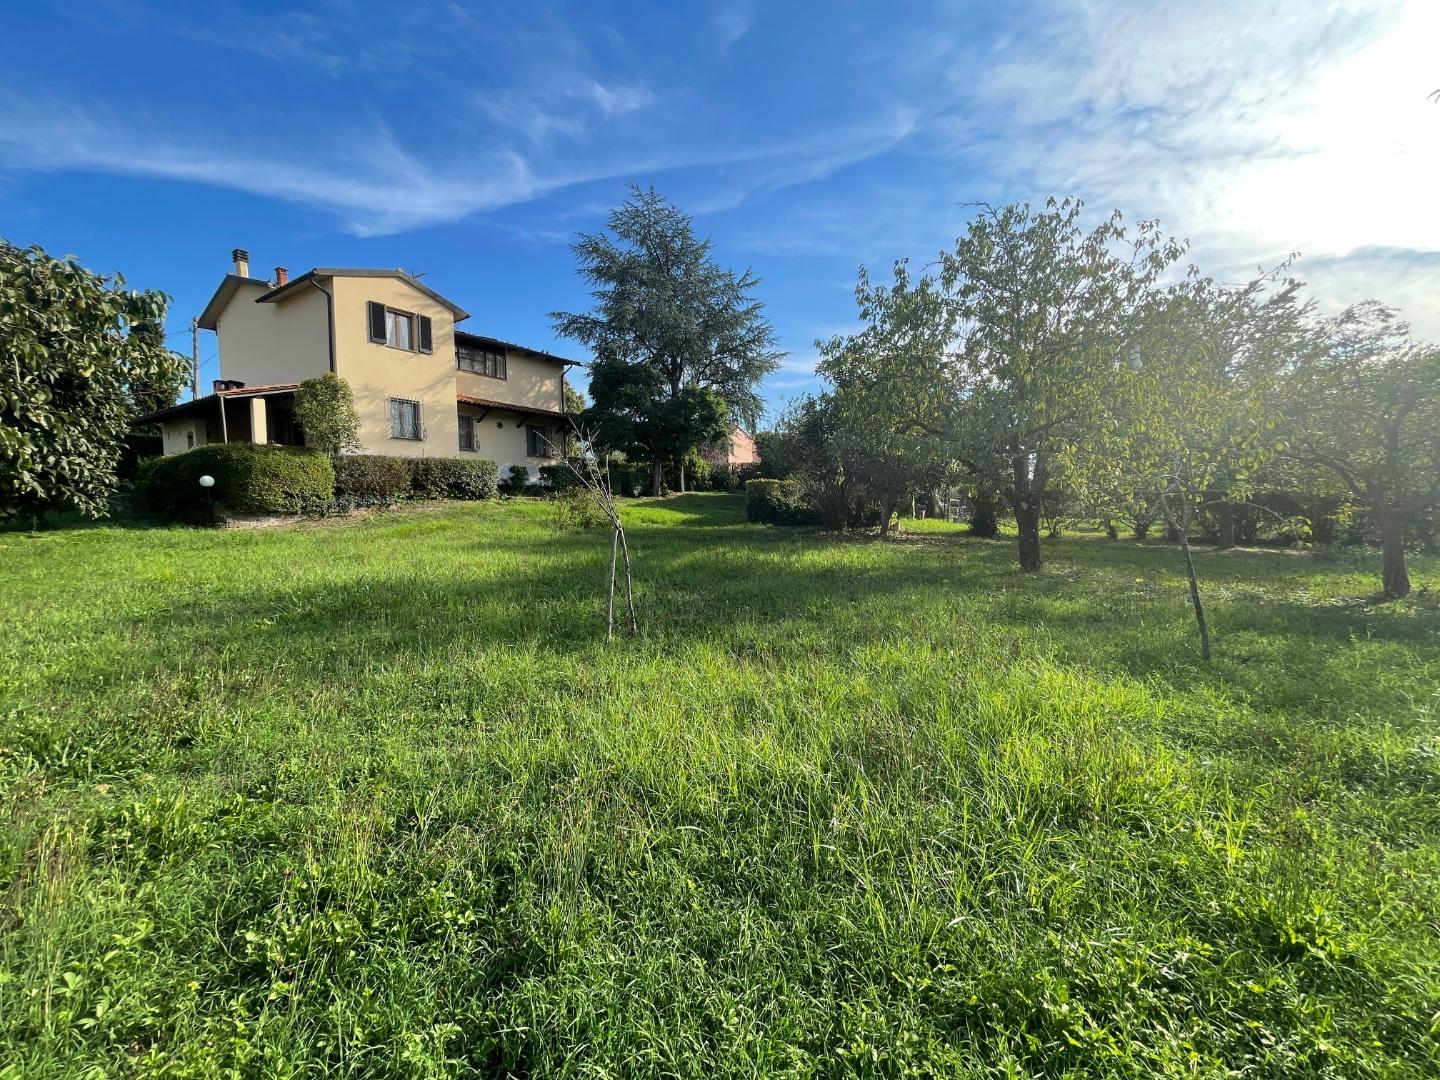 Casa singola in vendita a Casciana Terme Lari (PI)